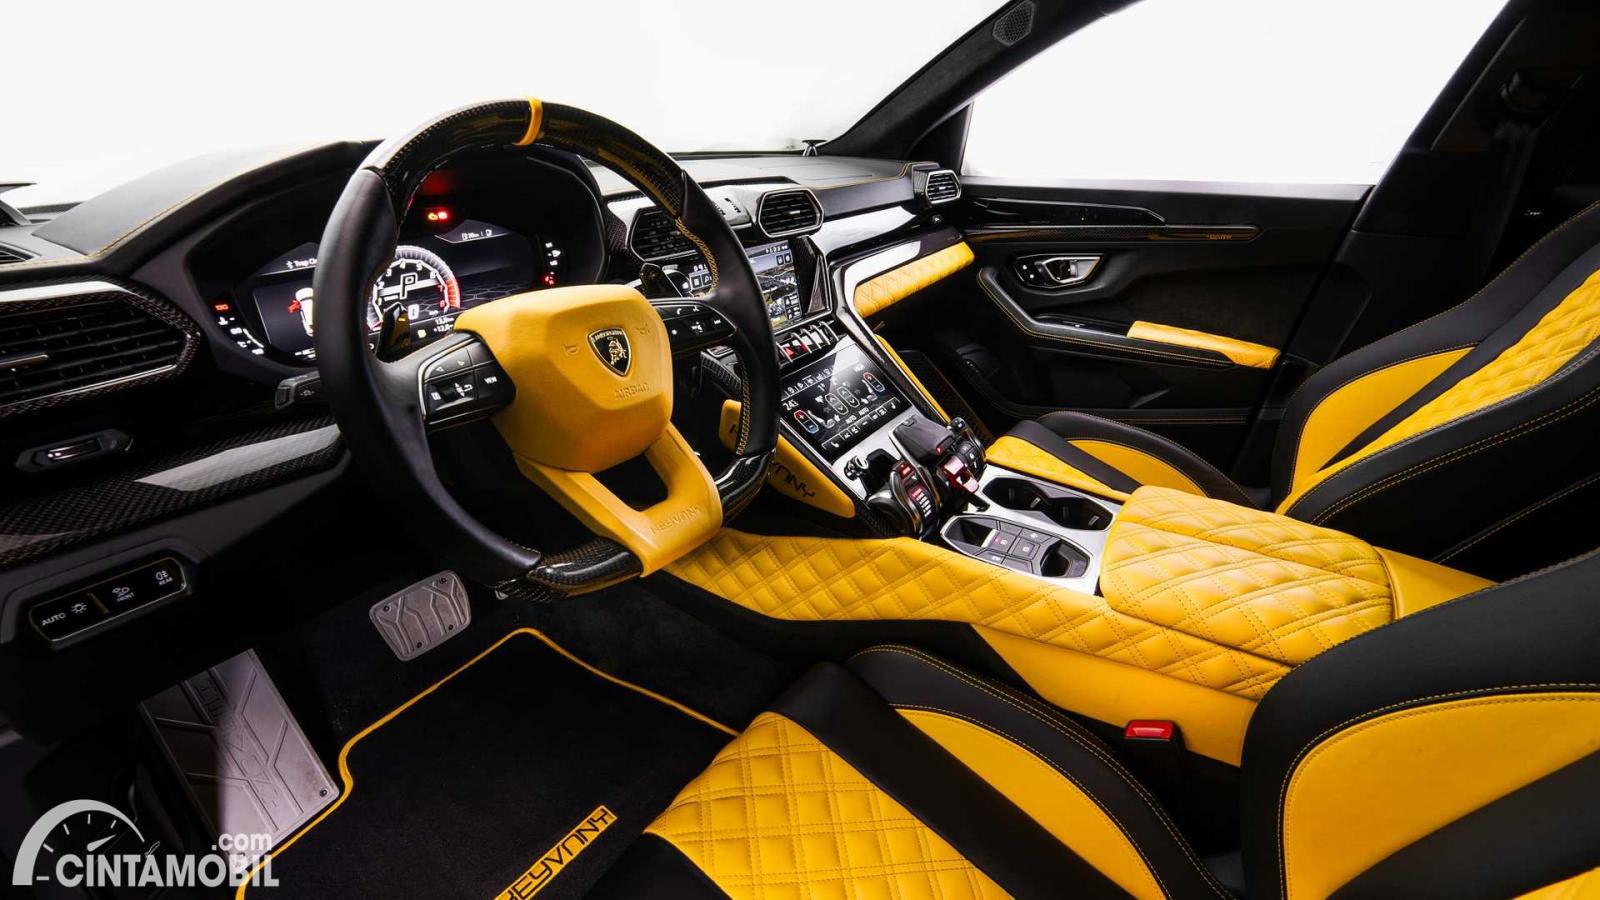 Wallpaper Mobil Lamborghini Modifikasi